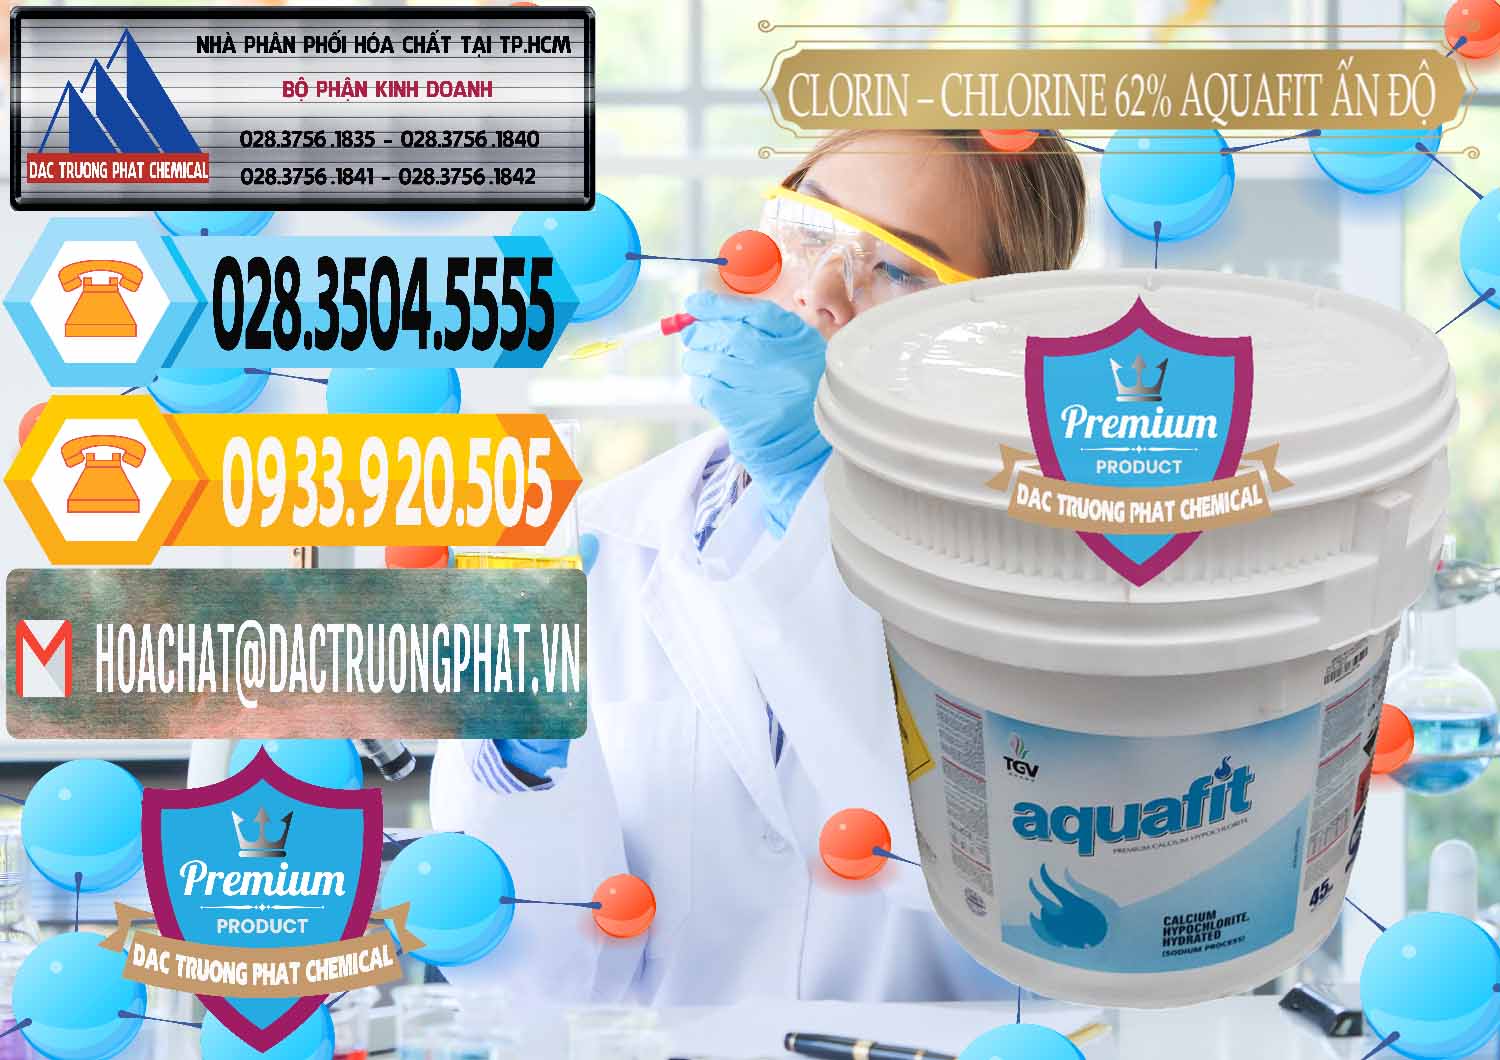 Kinh doanh & bán Clorin - Chlorine 62% Aquafit Thùng Lùn Ấn Độ India - 0057 - Chuyên phân phối & nhập khẩu hóa chất tại TP.HCM - hoachattayrua.net